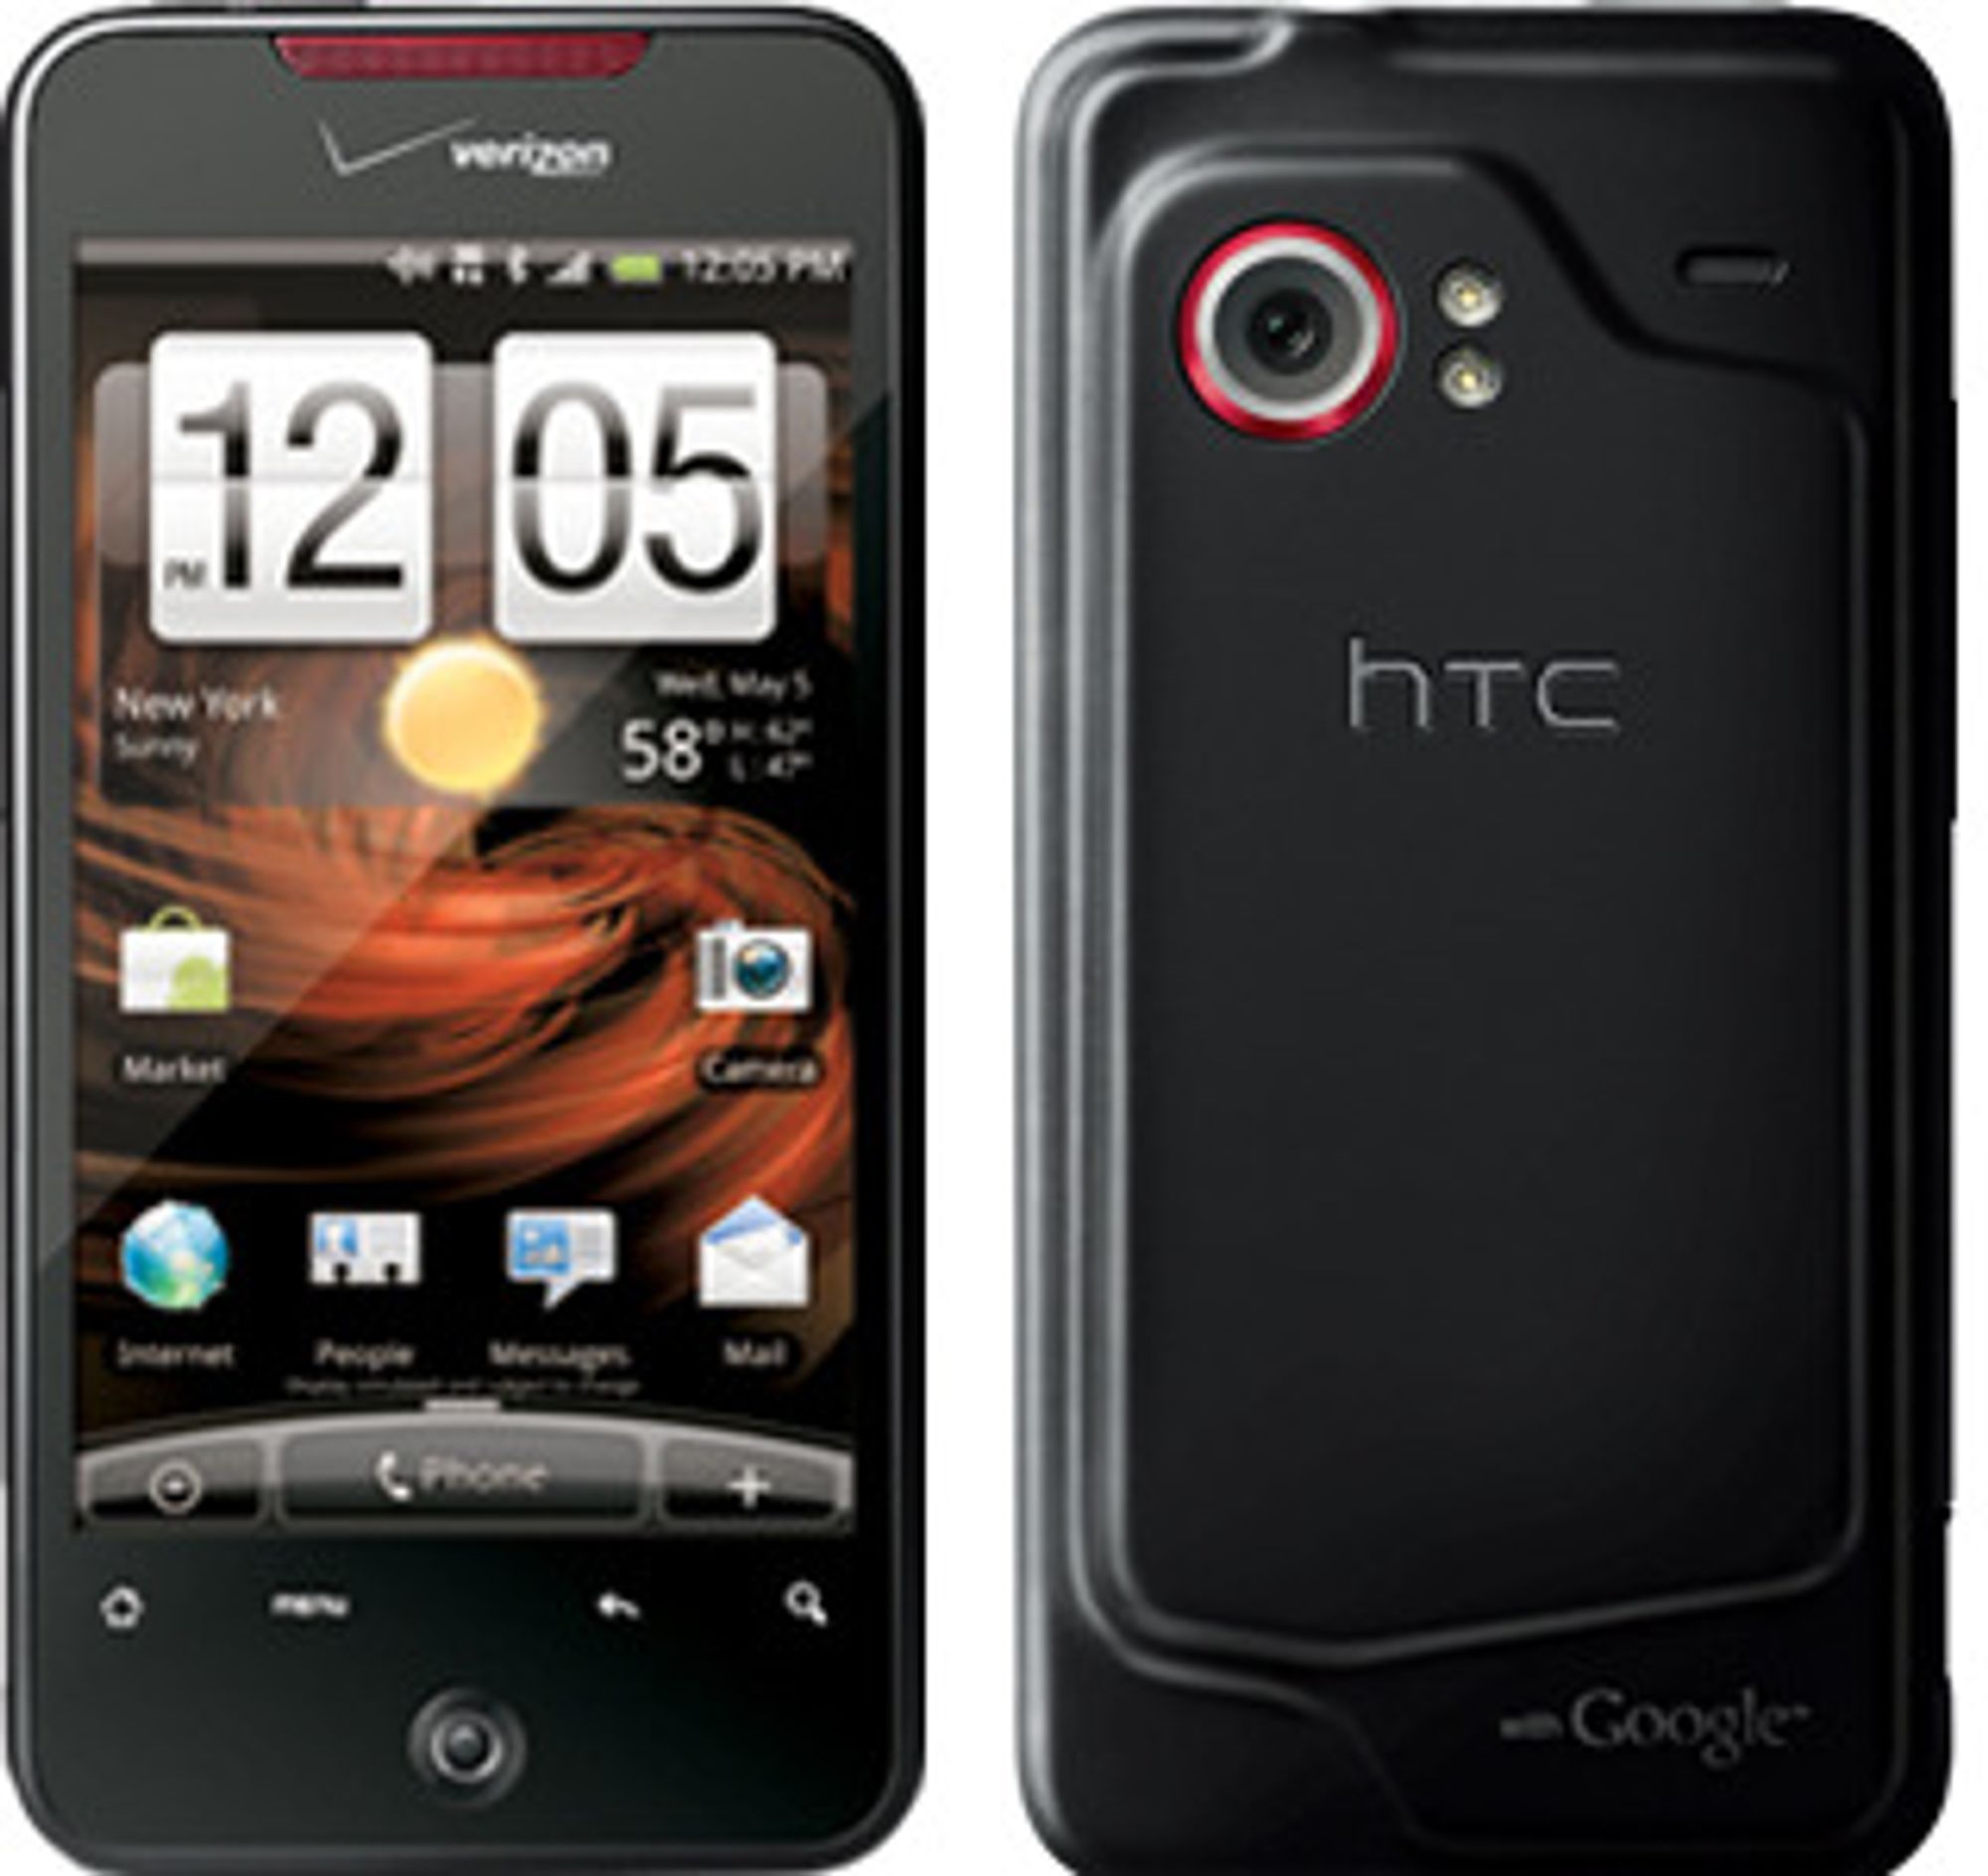 HTC Droid Incredible selges kun gjennom Verizon. Den er noe mer forseggjort enn f eks HTC Desire som selges i Norge. Trolig har Desire de samme sårbarhetene som Droid.